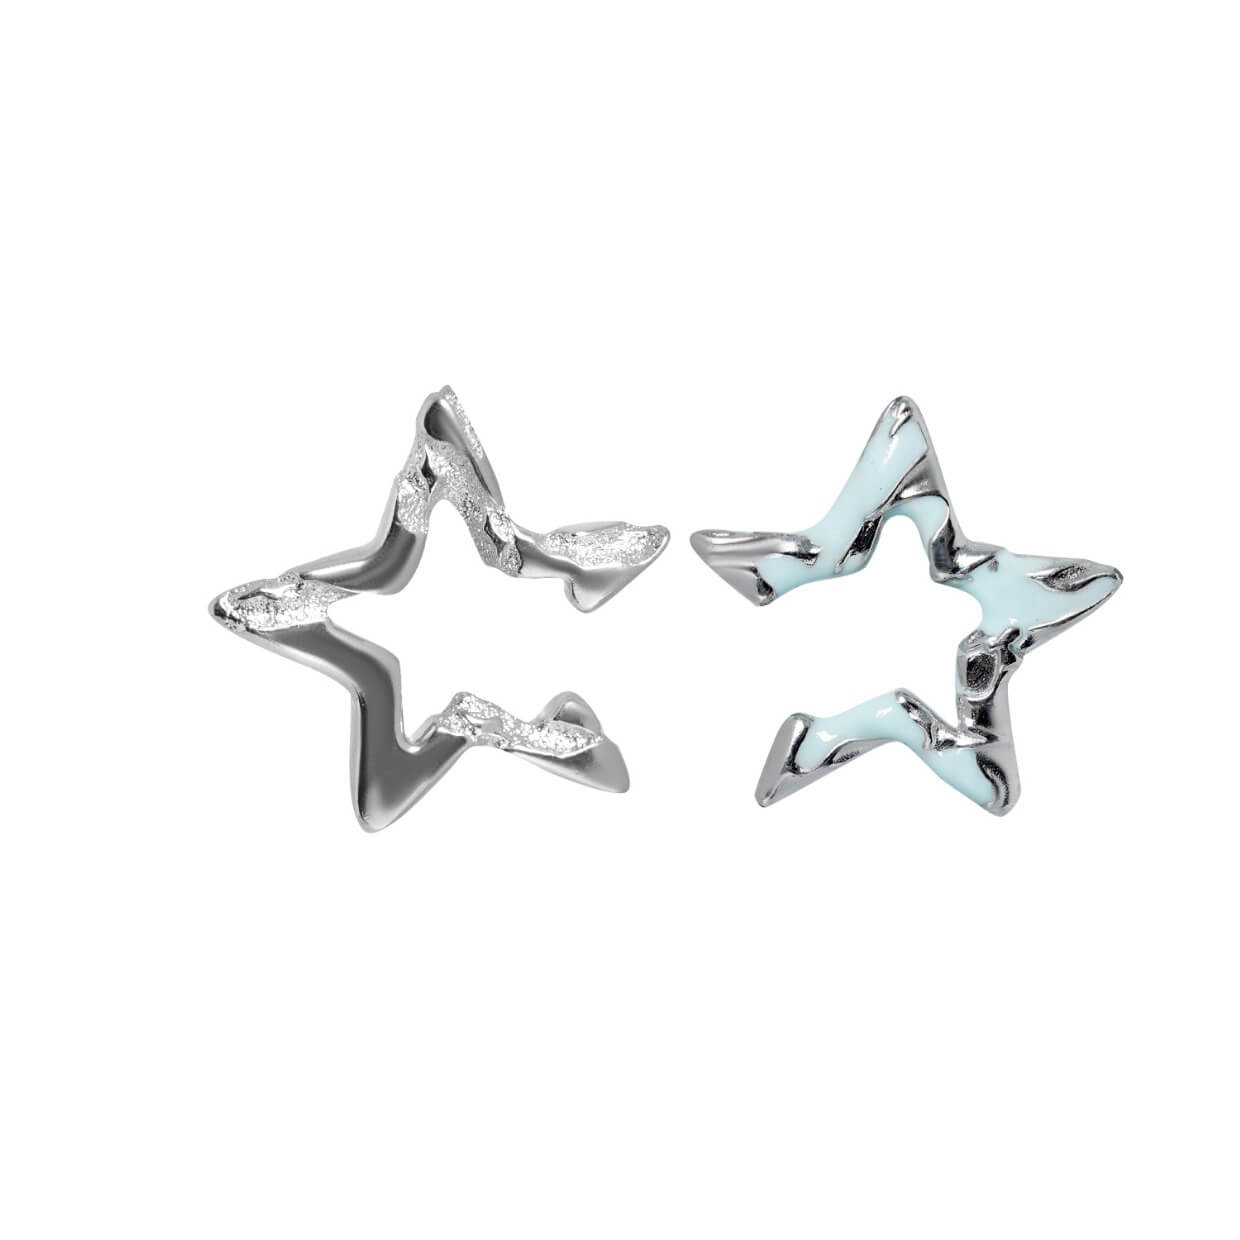 Pentagram Ear Cuff Clip-On Earrings  Buy at Khanie